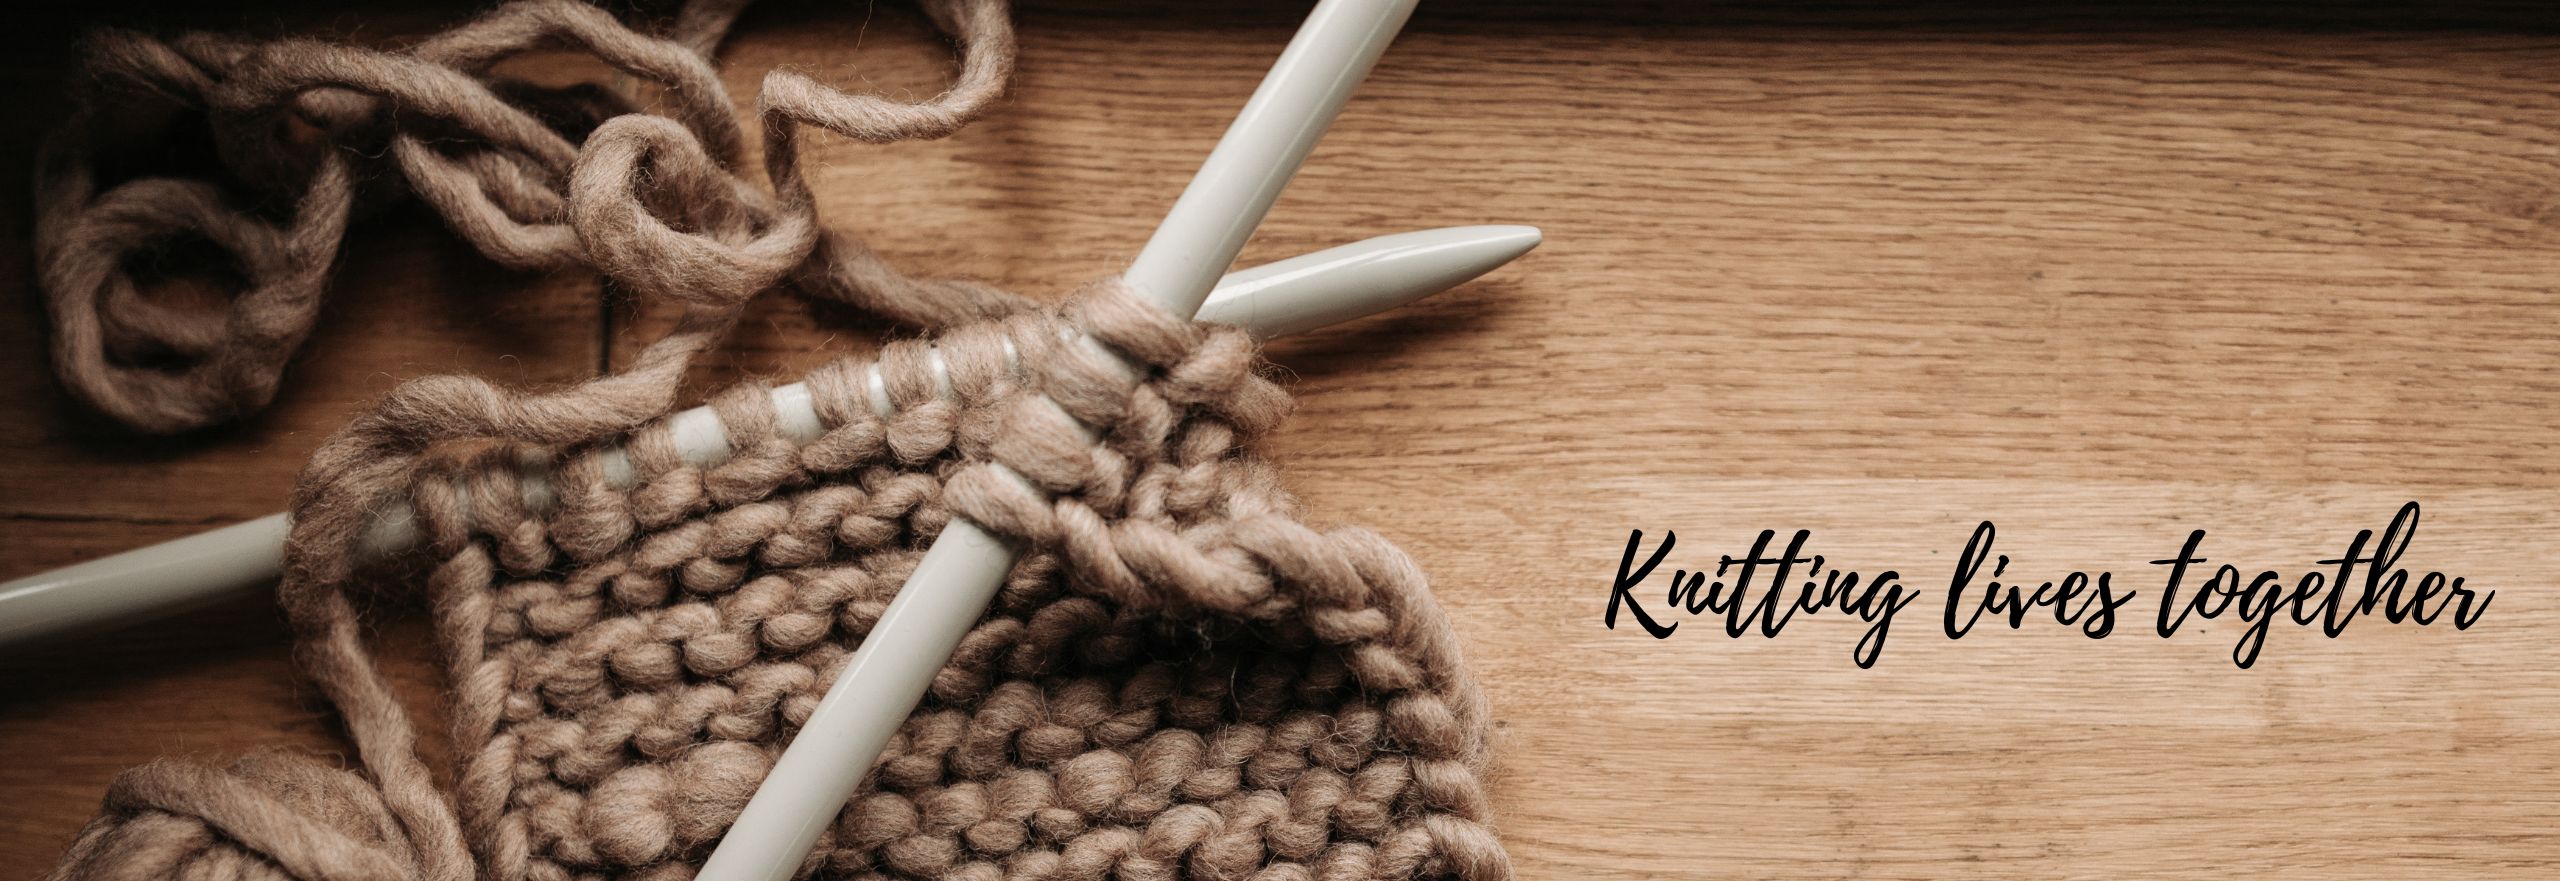 Knitting Lives together blog header